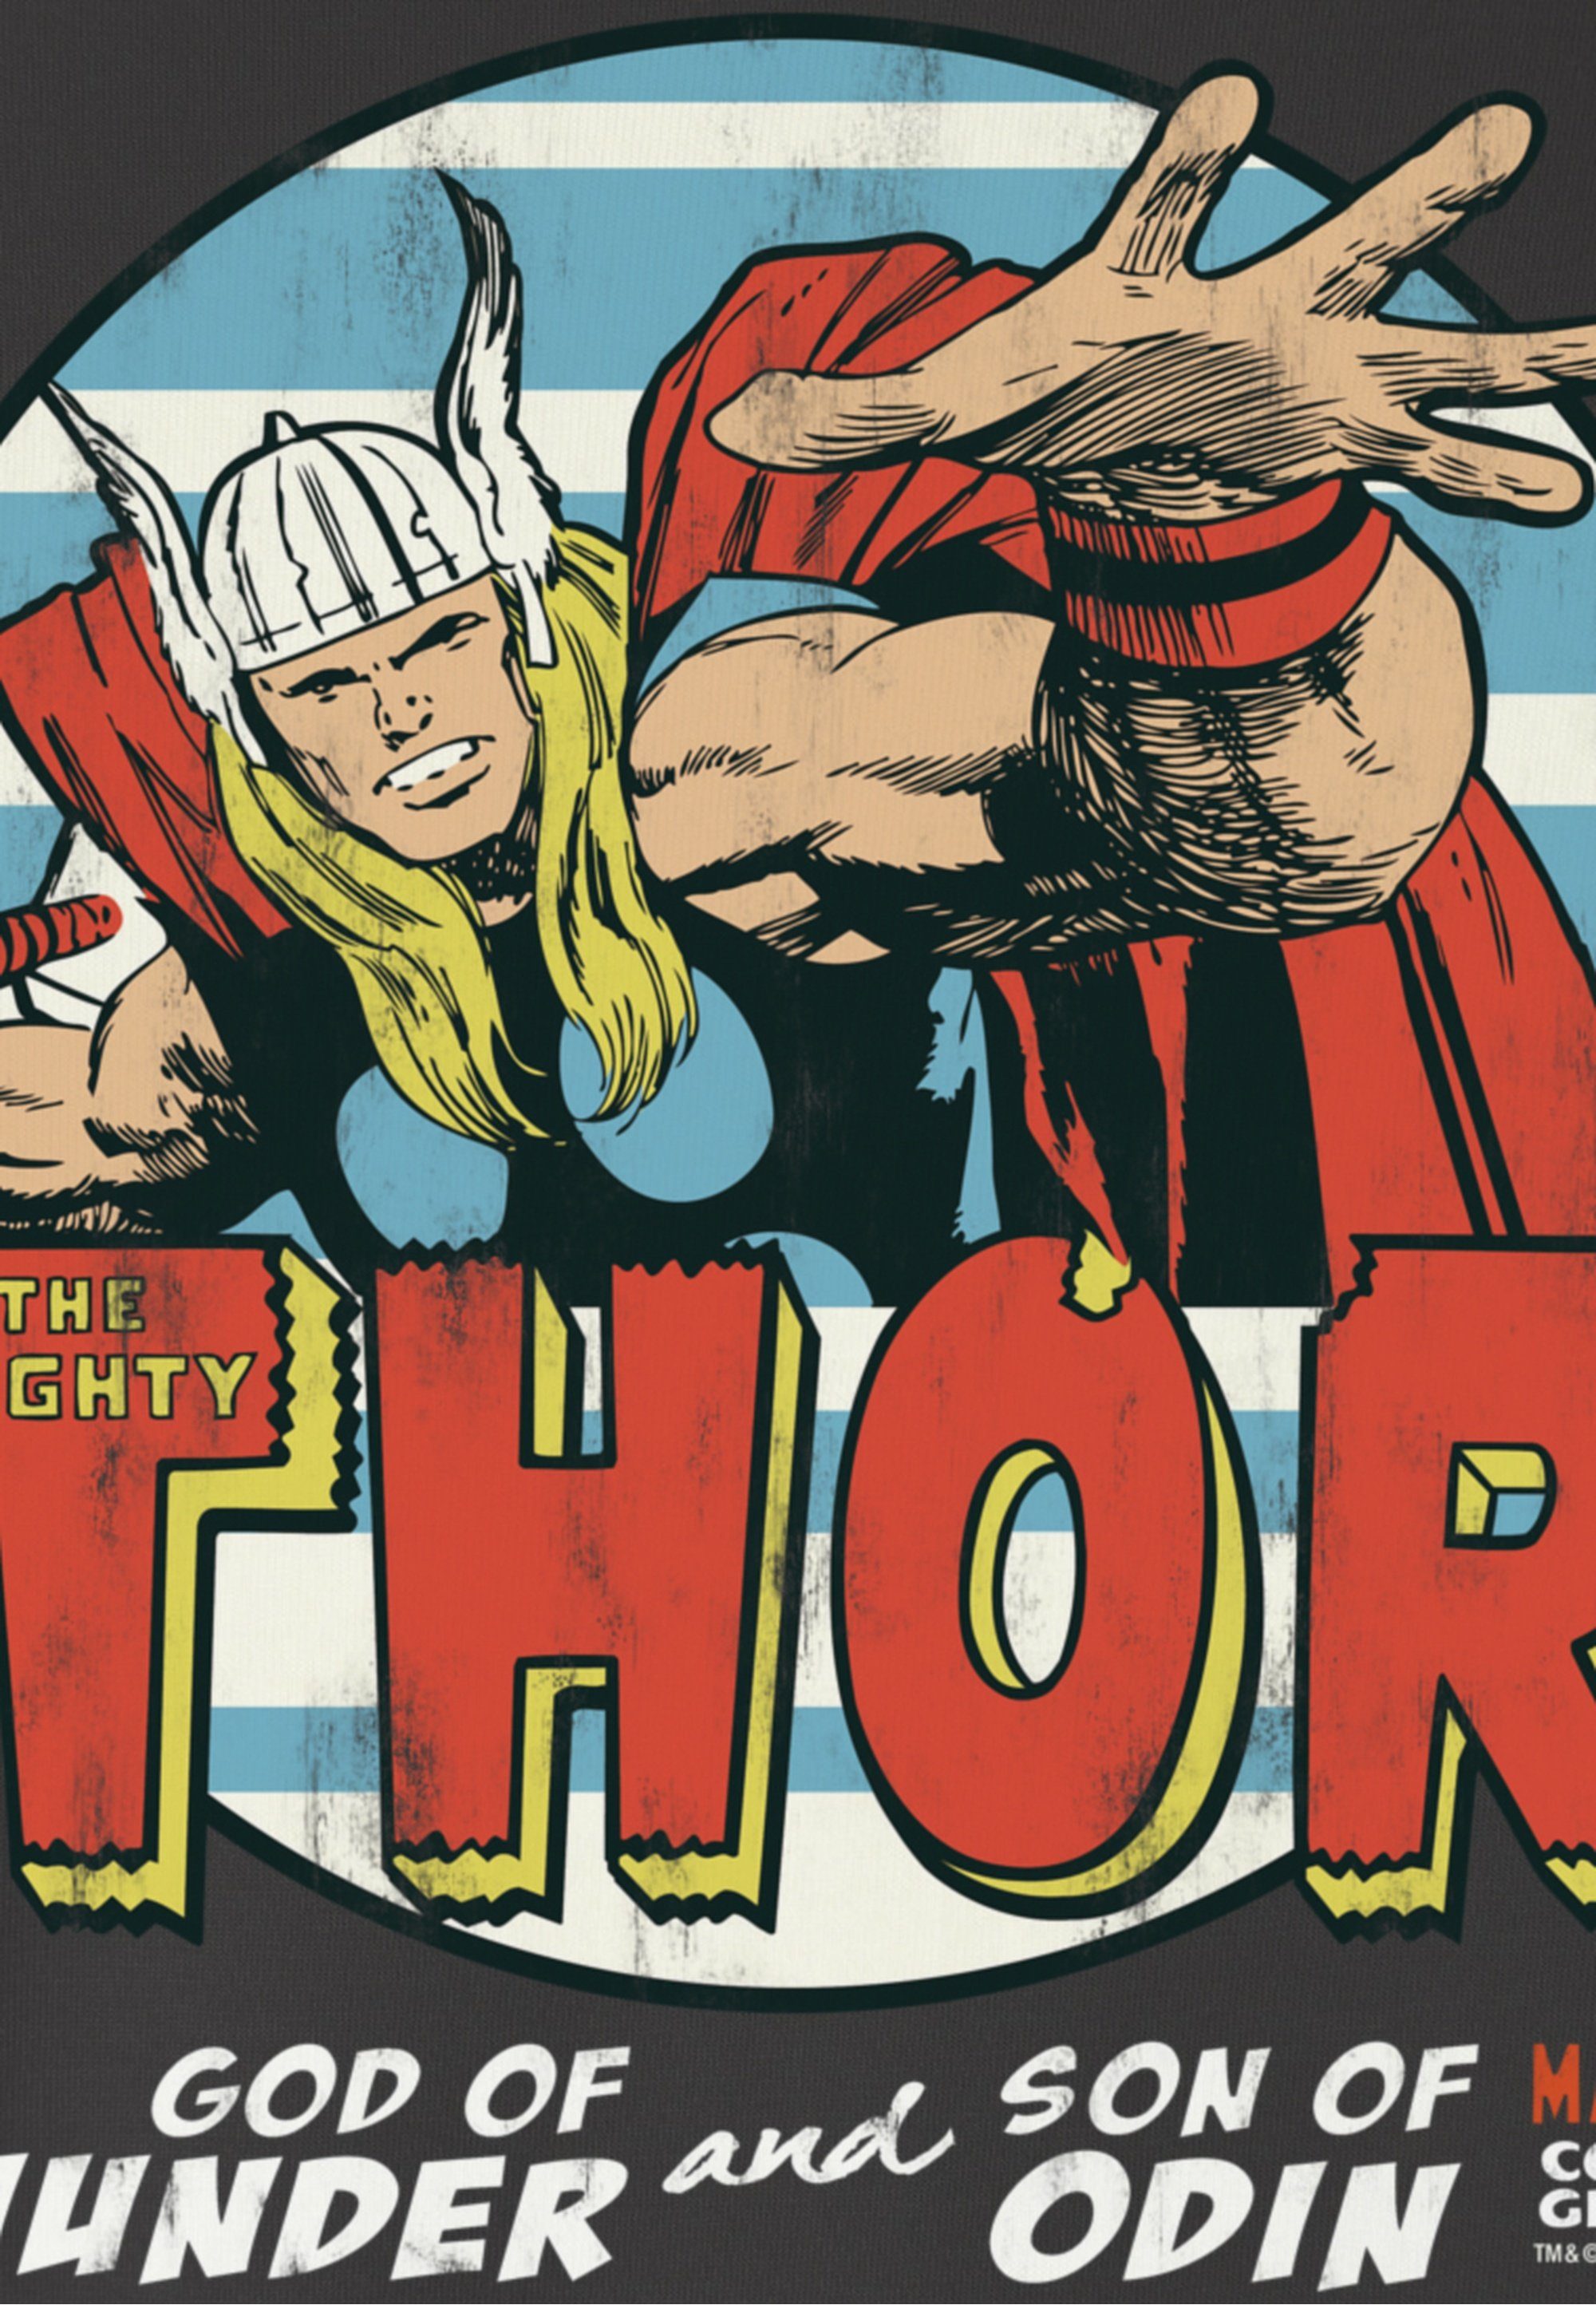 - Marvel coolem LOGOSHIRT Thor mit T-Shirt Superhelden-Frontprint